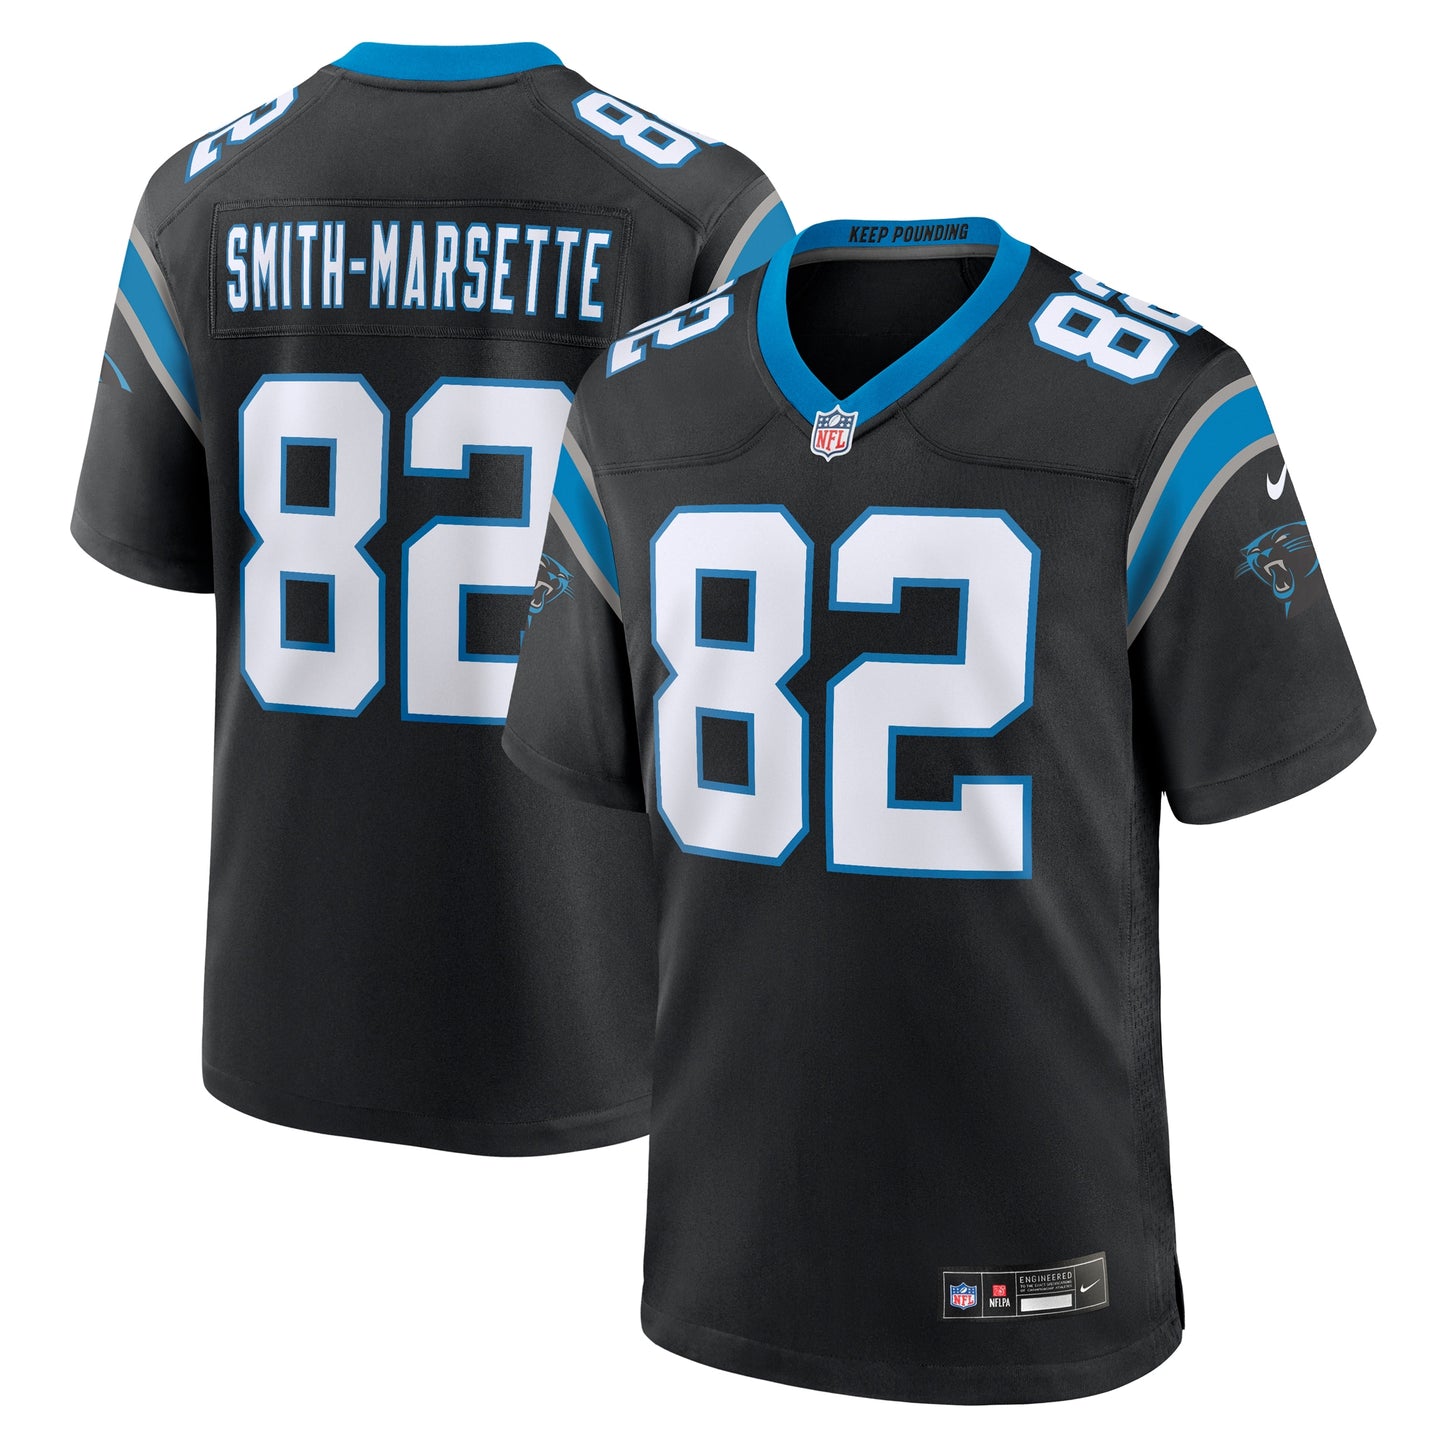 Ihmir Smith-Marsette Carolina Panthers Nike Team Game Jersey -  Black